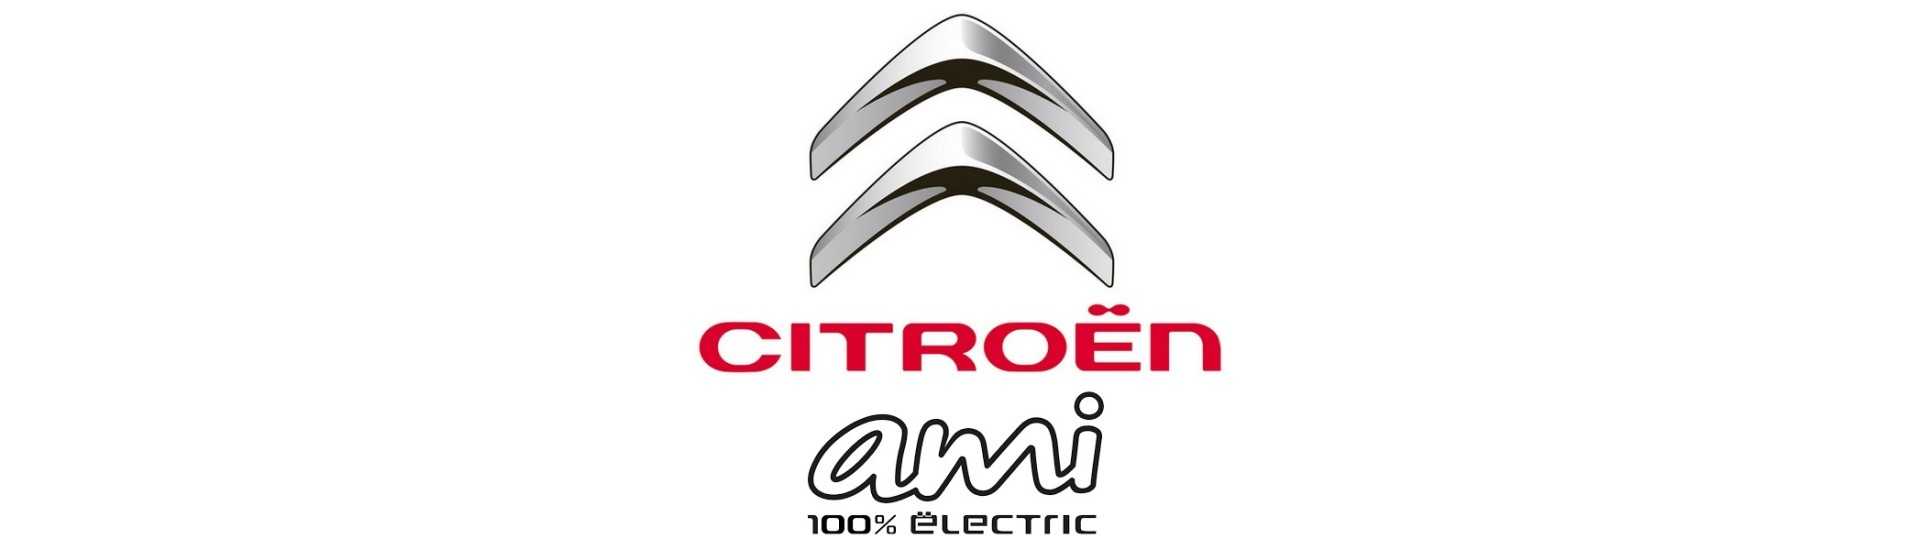 Full Moyeu on asettanut parhaat auton hinnat ilman lupaa Citroën Ami